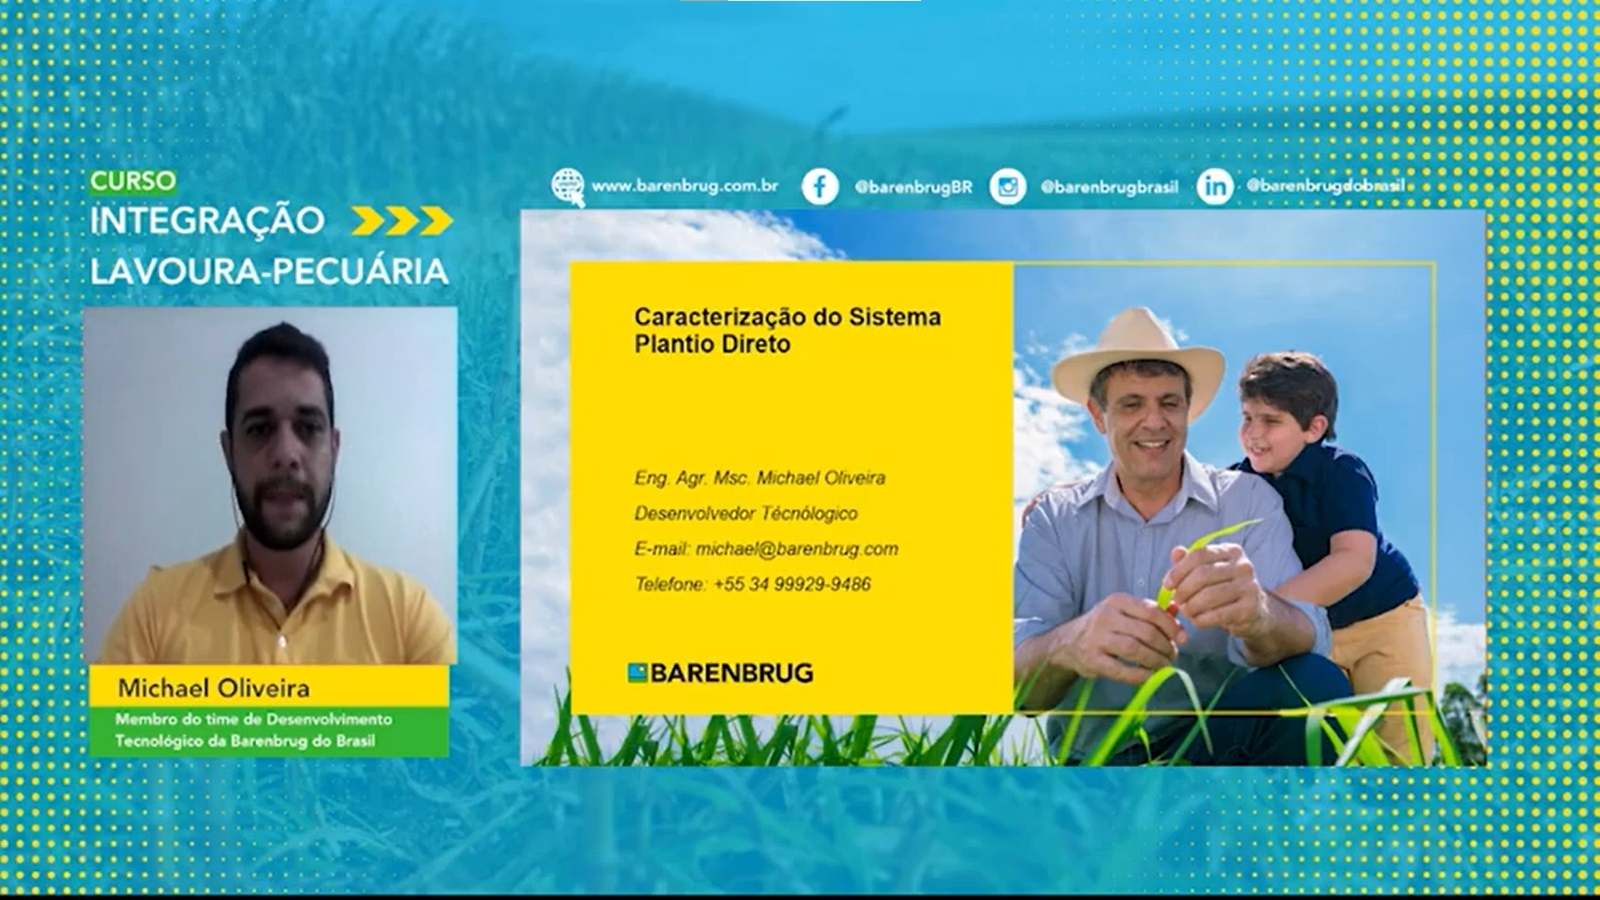 O segundo módulo é ministrado por Michael Oliveira, é engenheiro agrônomo e Mestre em Produção e Nutrição de Ruminantes, com ênfase em forragicultura e pastagens